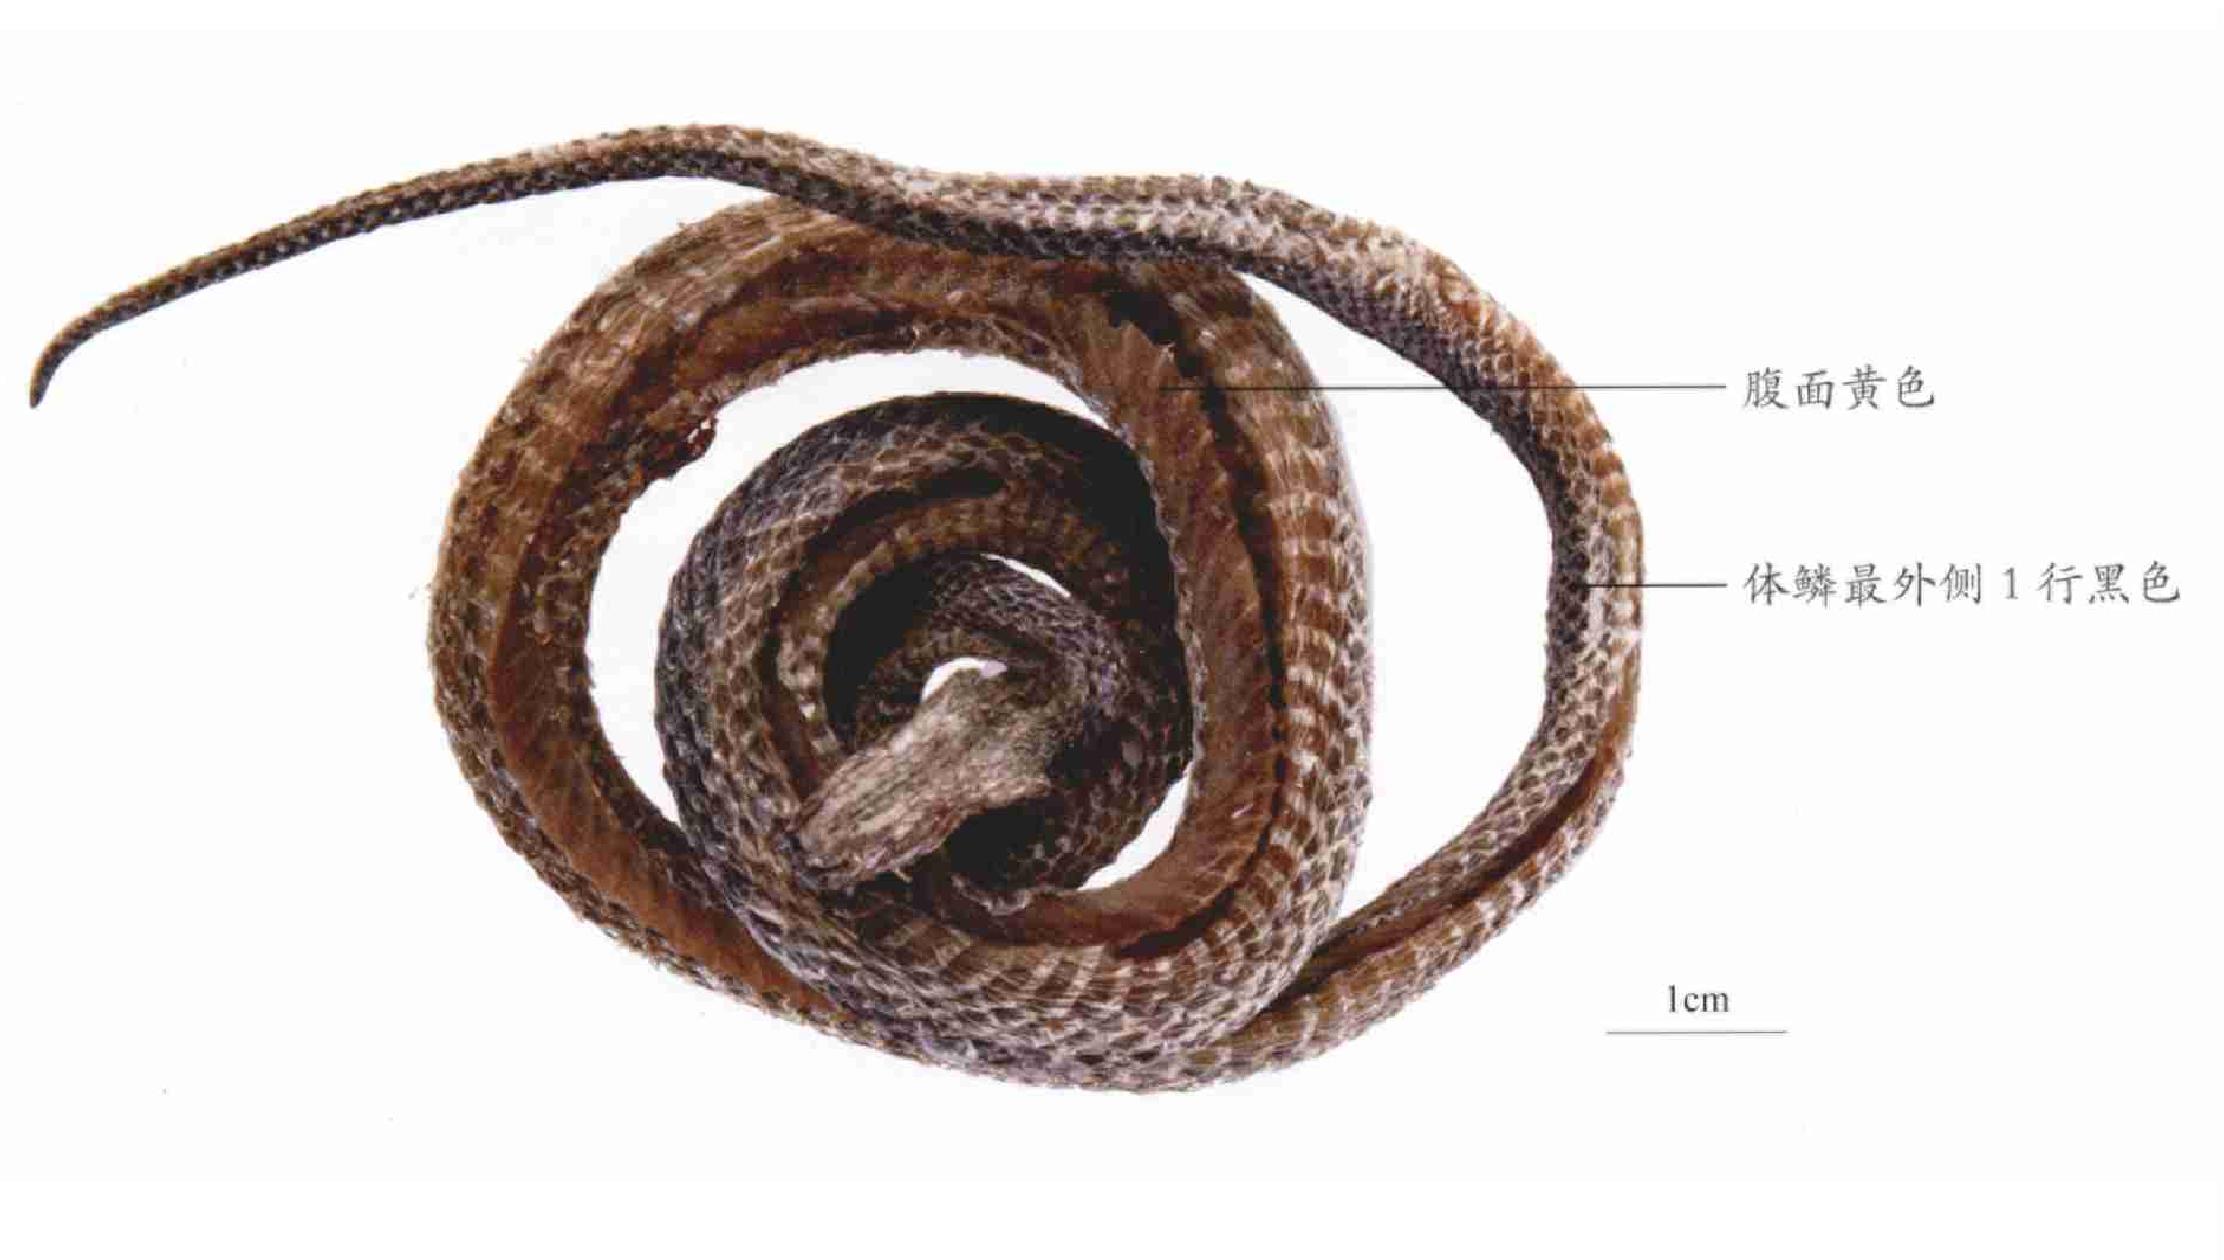 中国水蛇-非法贸易野生动物与制品鉴别-图片